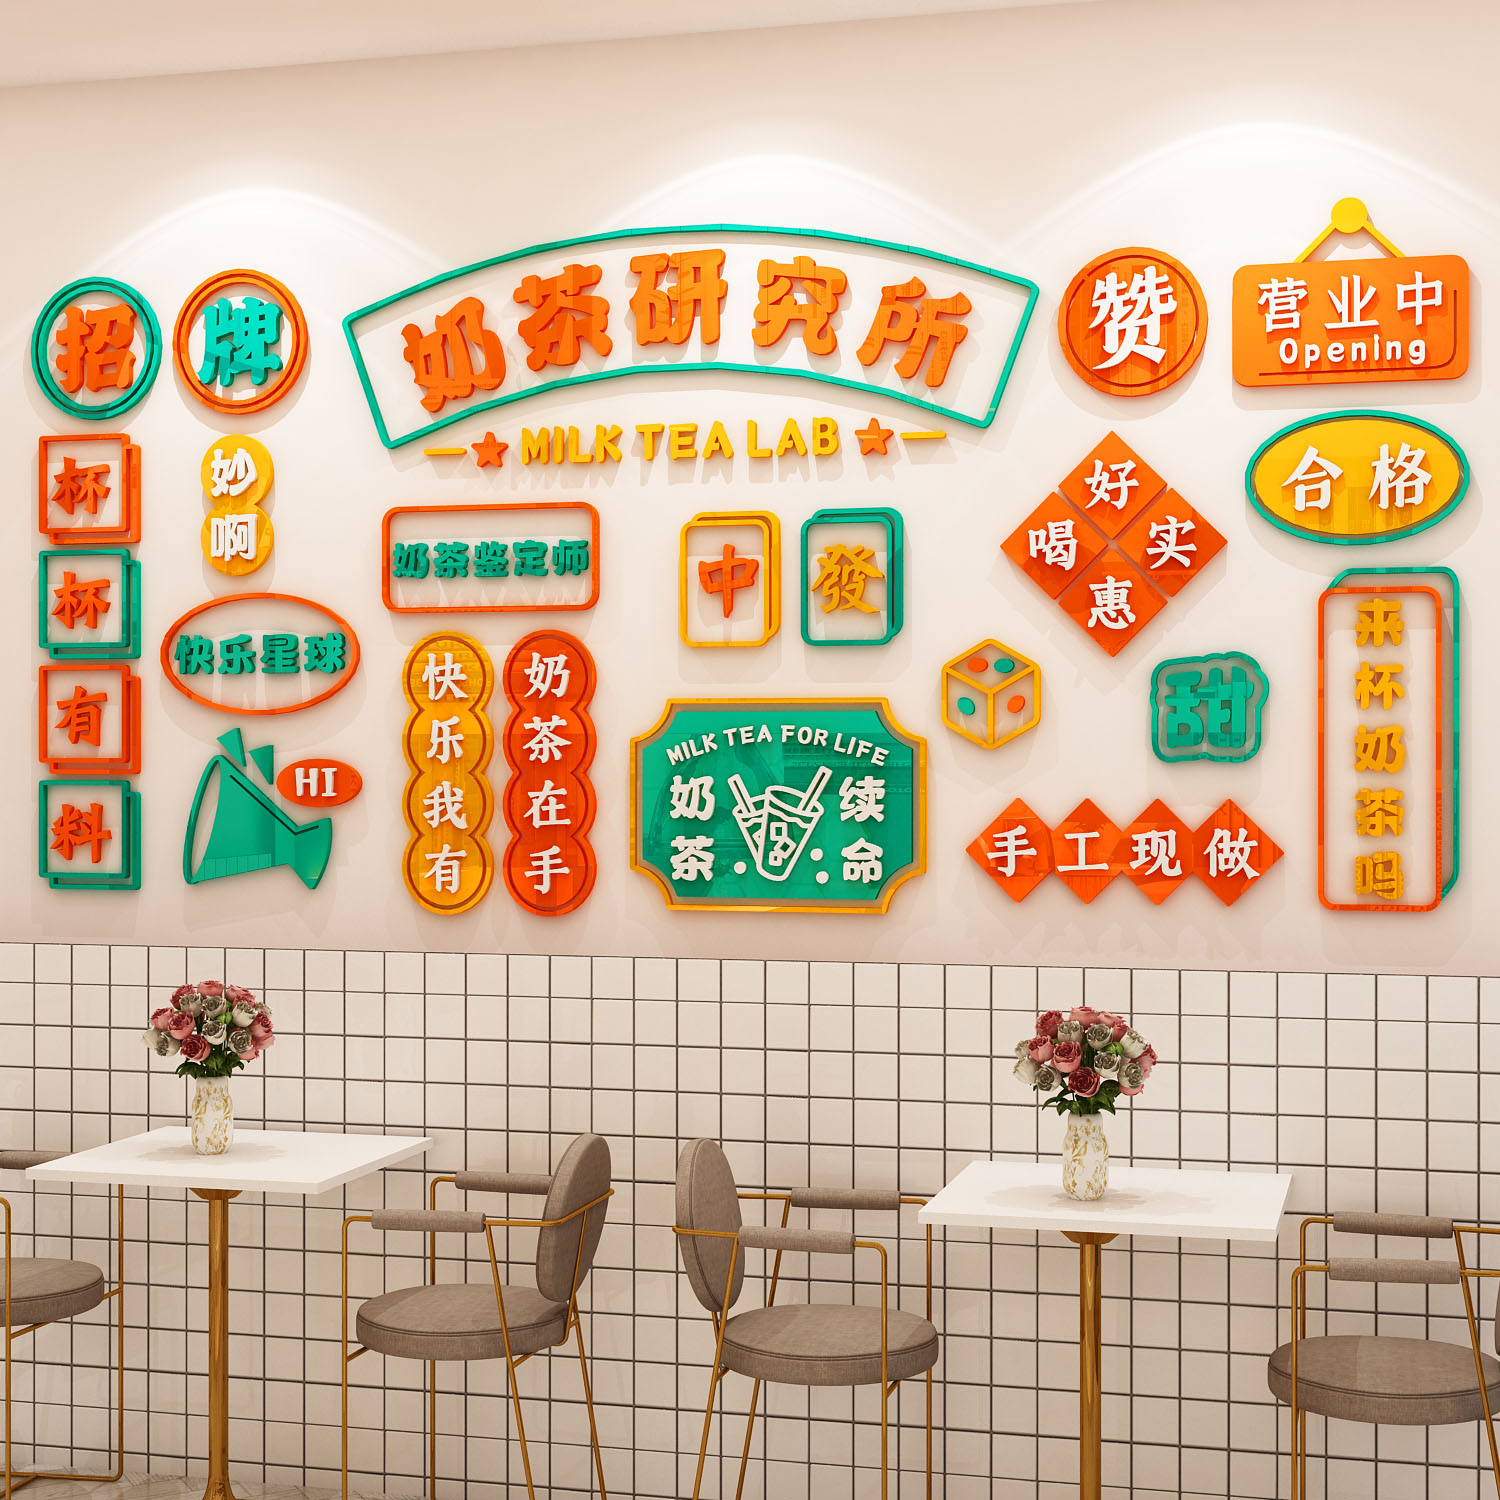 奶茶店墙壁装饰创意甜品店铺吸引人网红打卡背景墙拍照区布置墙贴